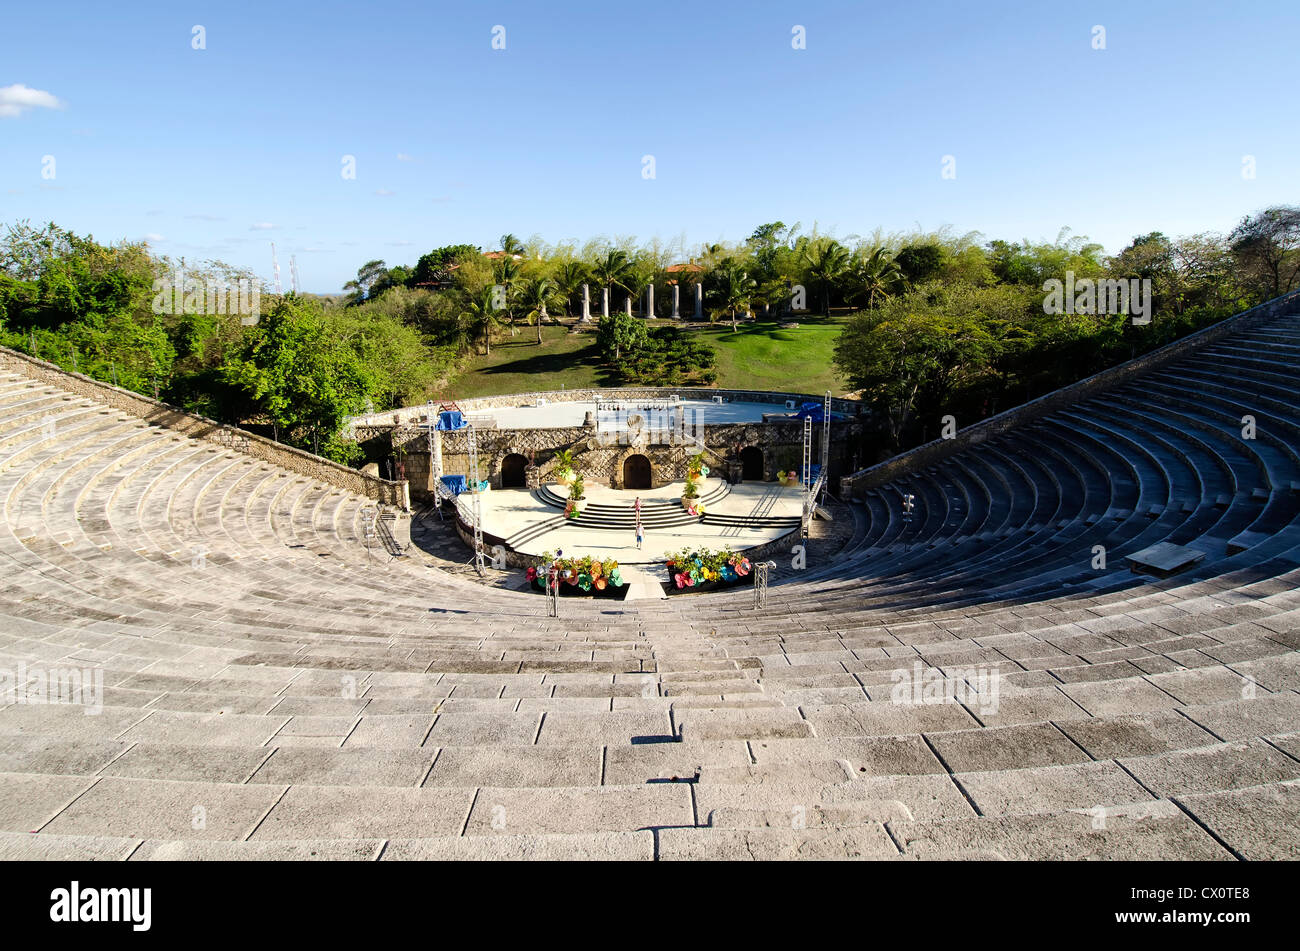 Altos de Chavon amphitheater tourist attraction at Casa de Campo, La Romana, Dominican Republic Stock Photo